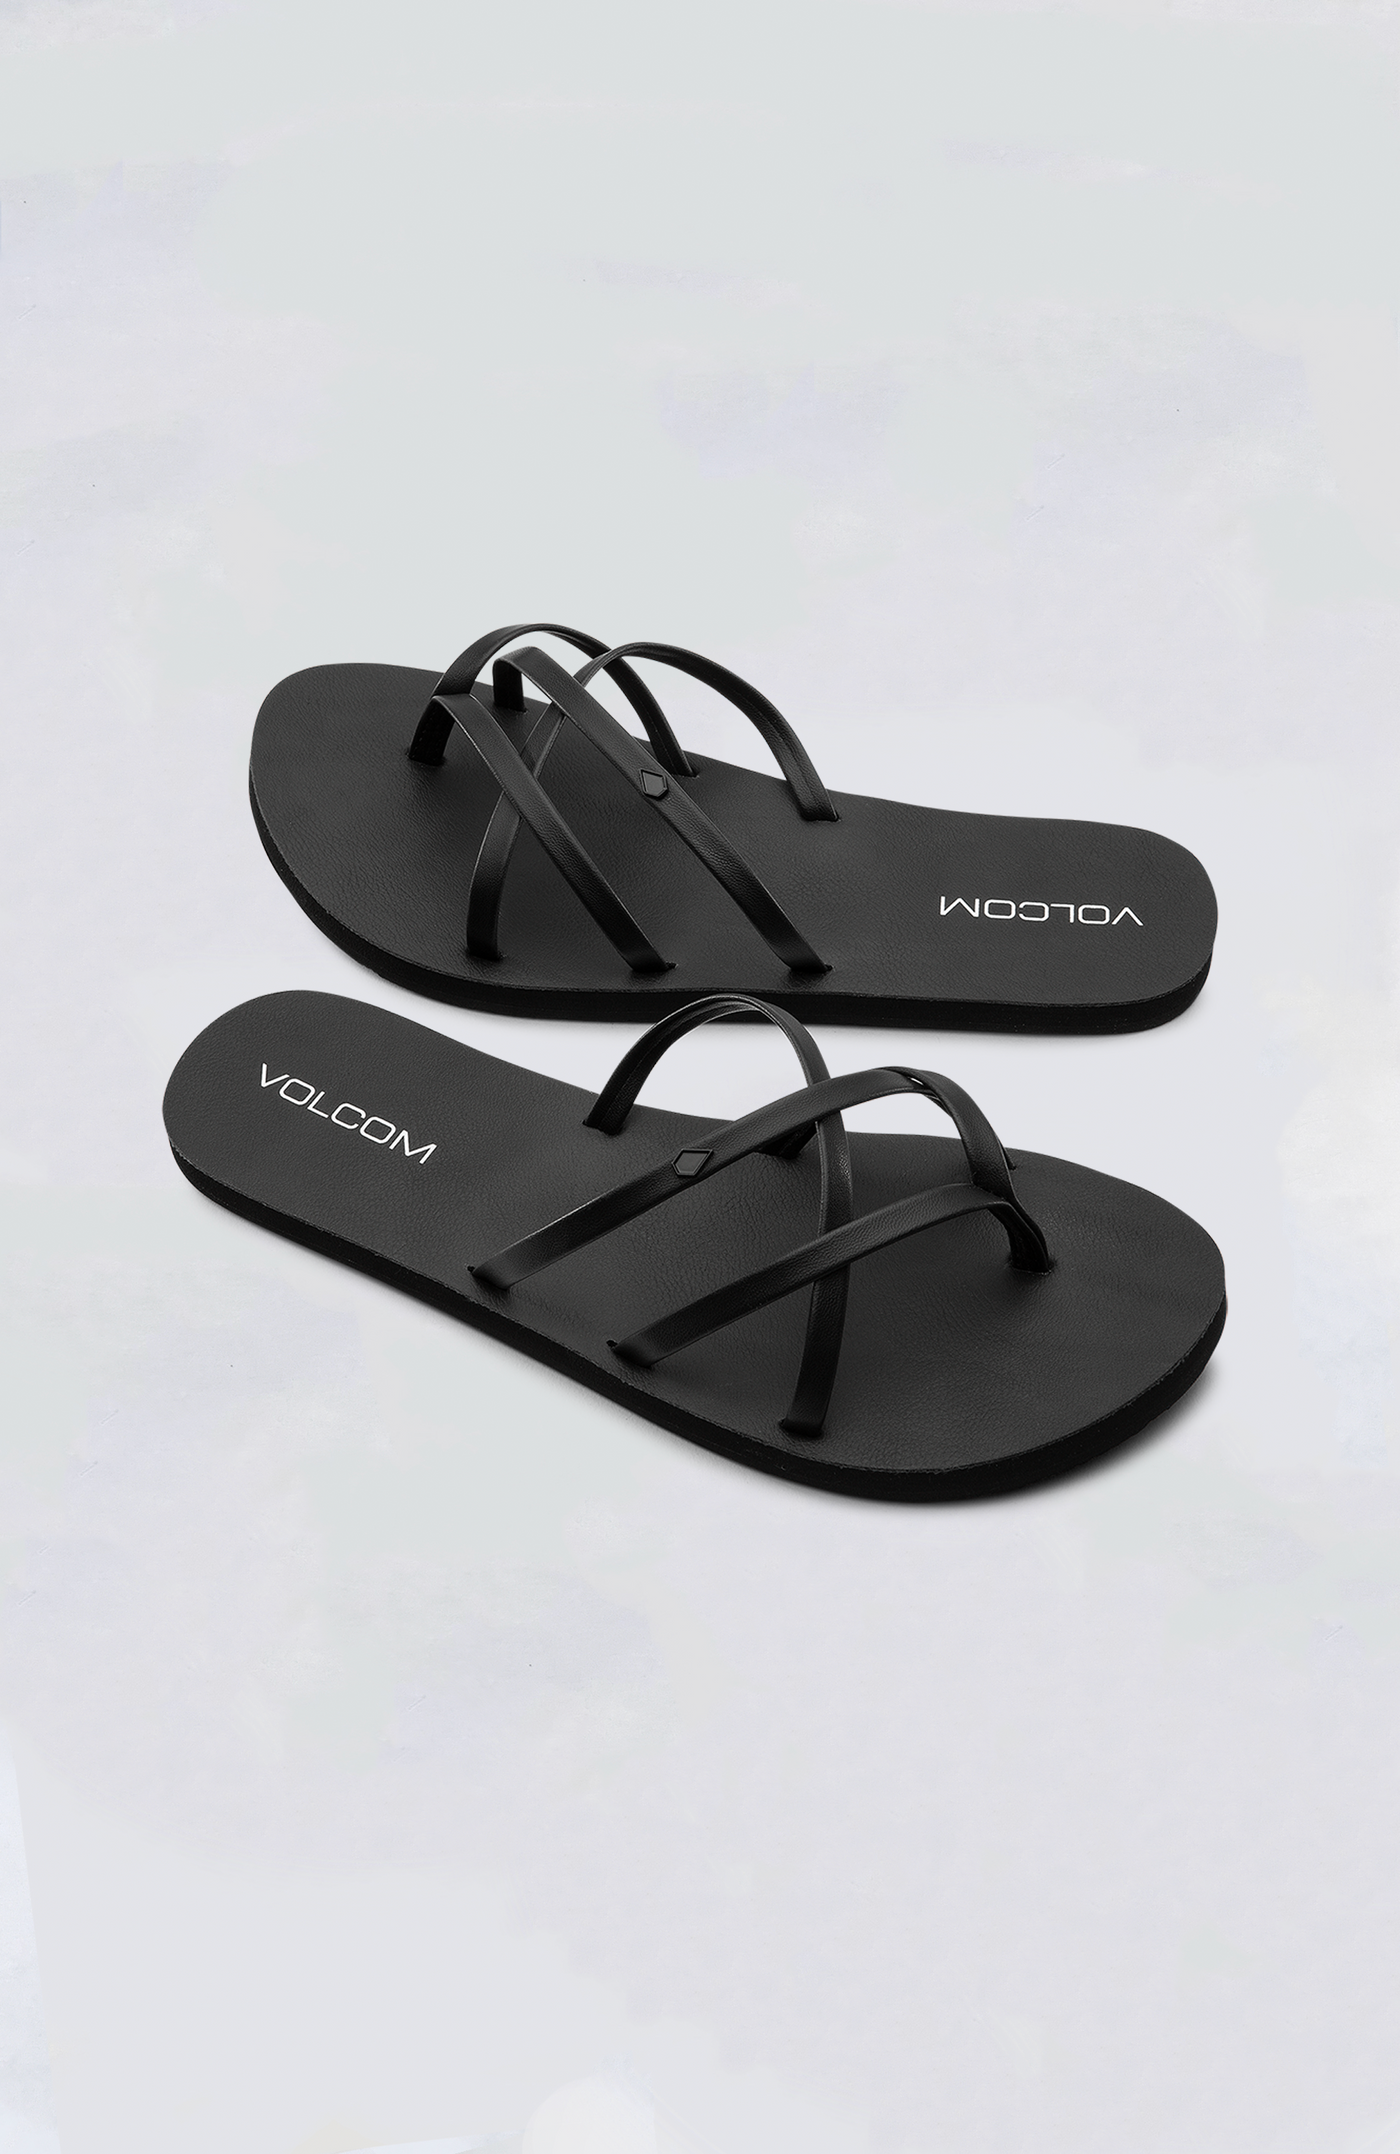 Volcom - Women's New School II Sandals